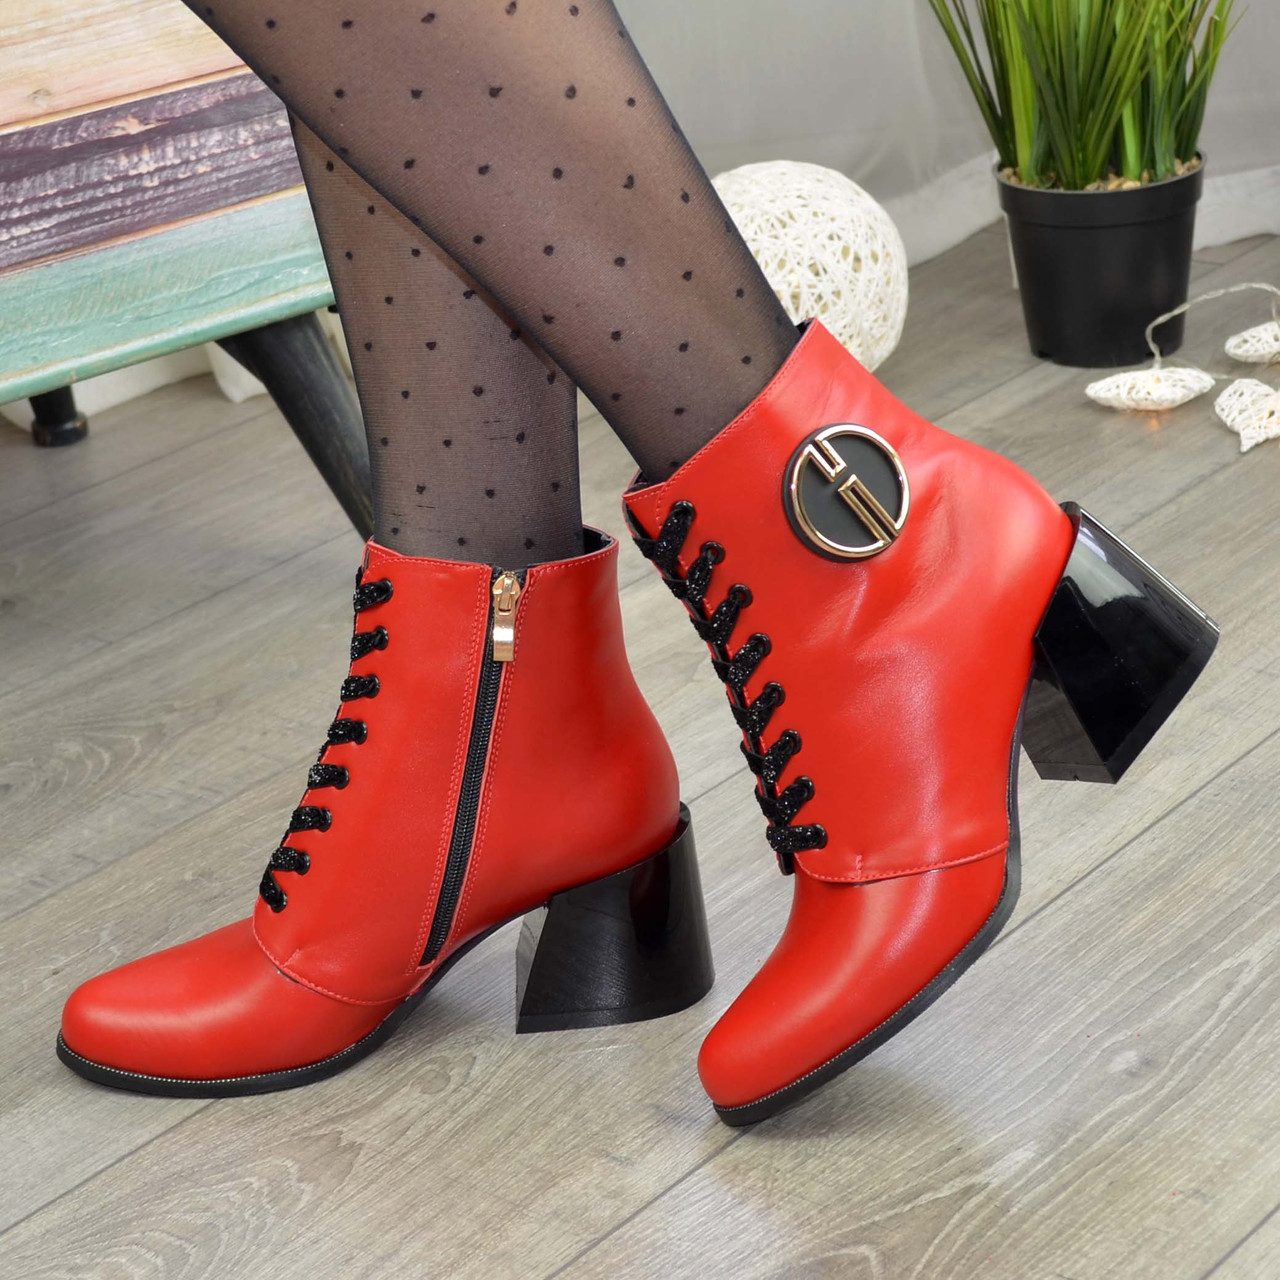 

Ботинки женские кожаные на каблуке. Цвет красный